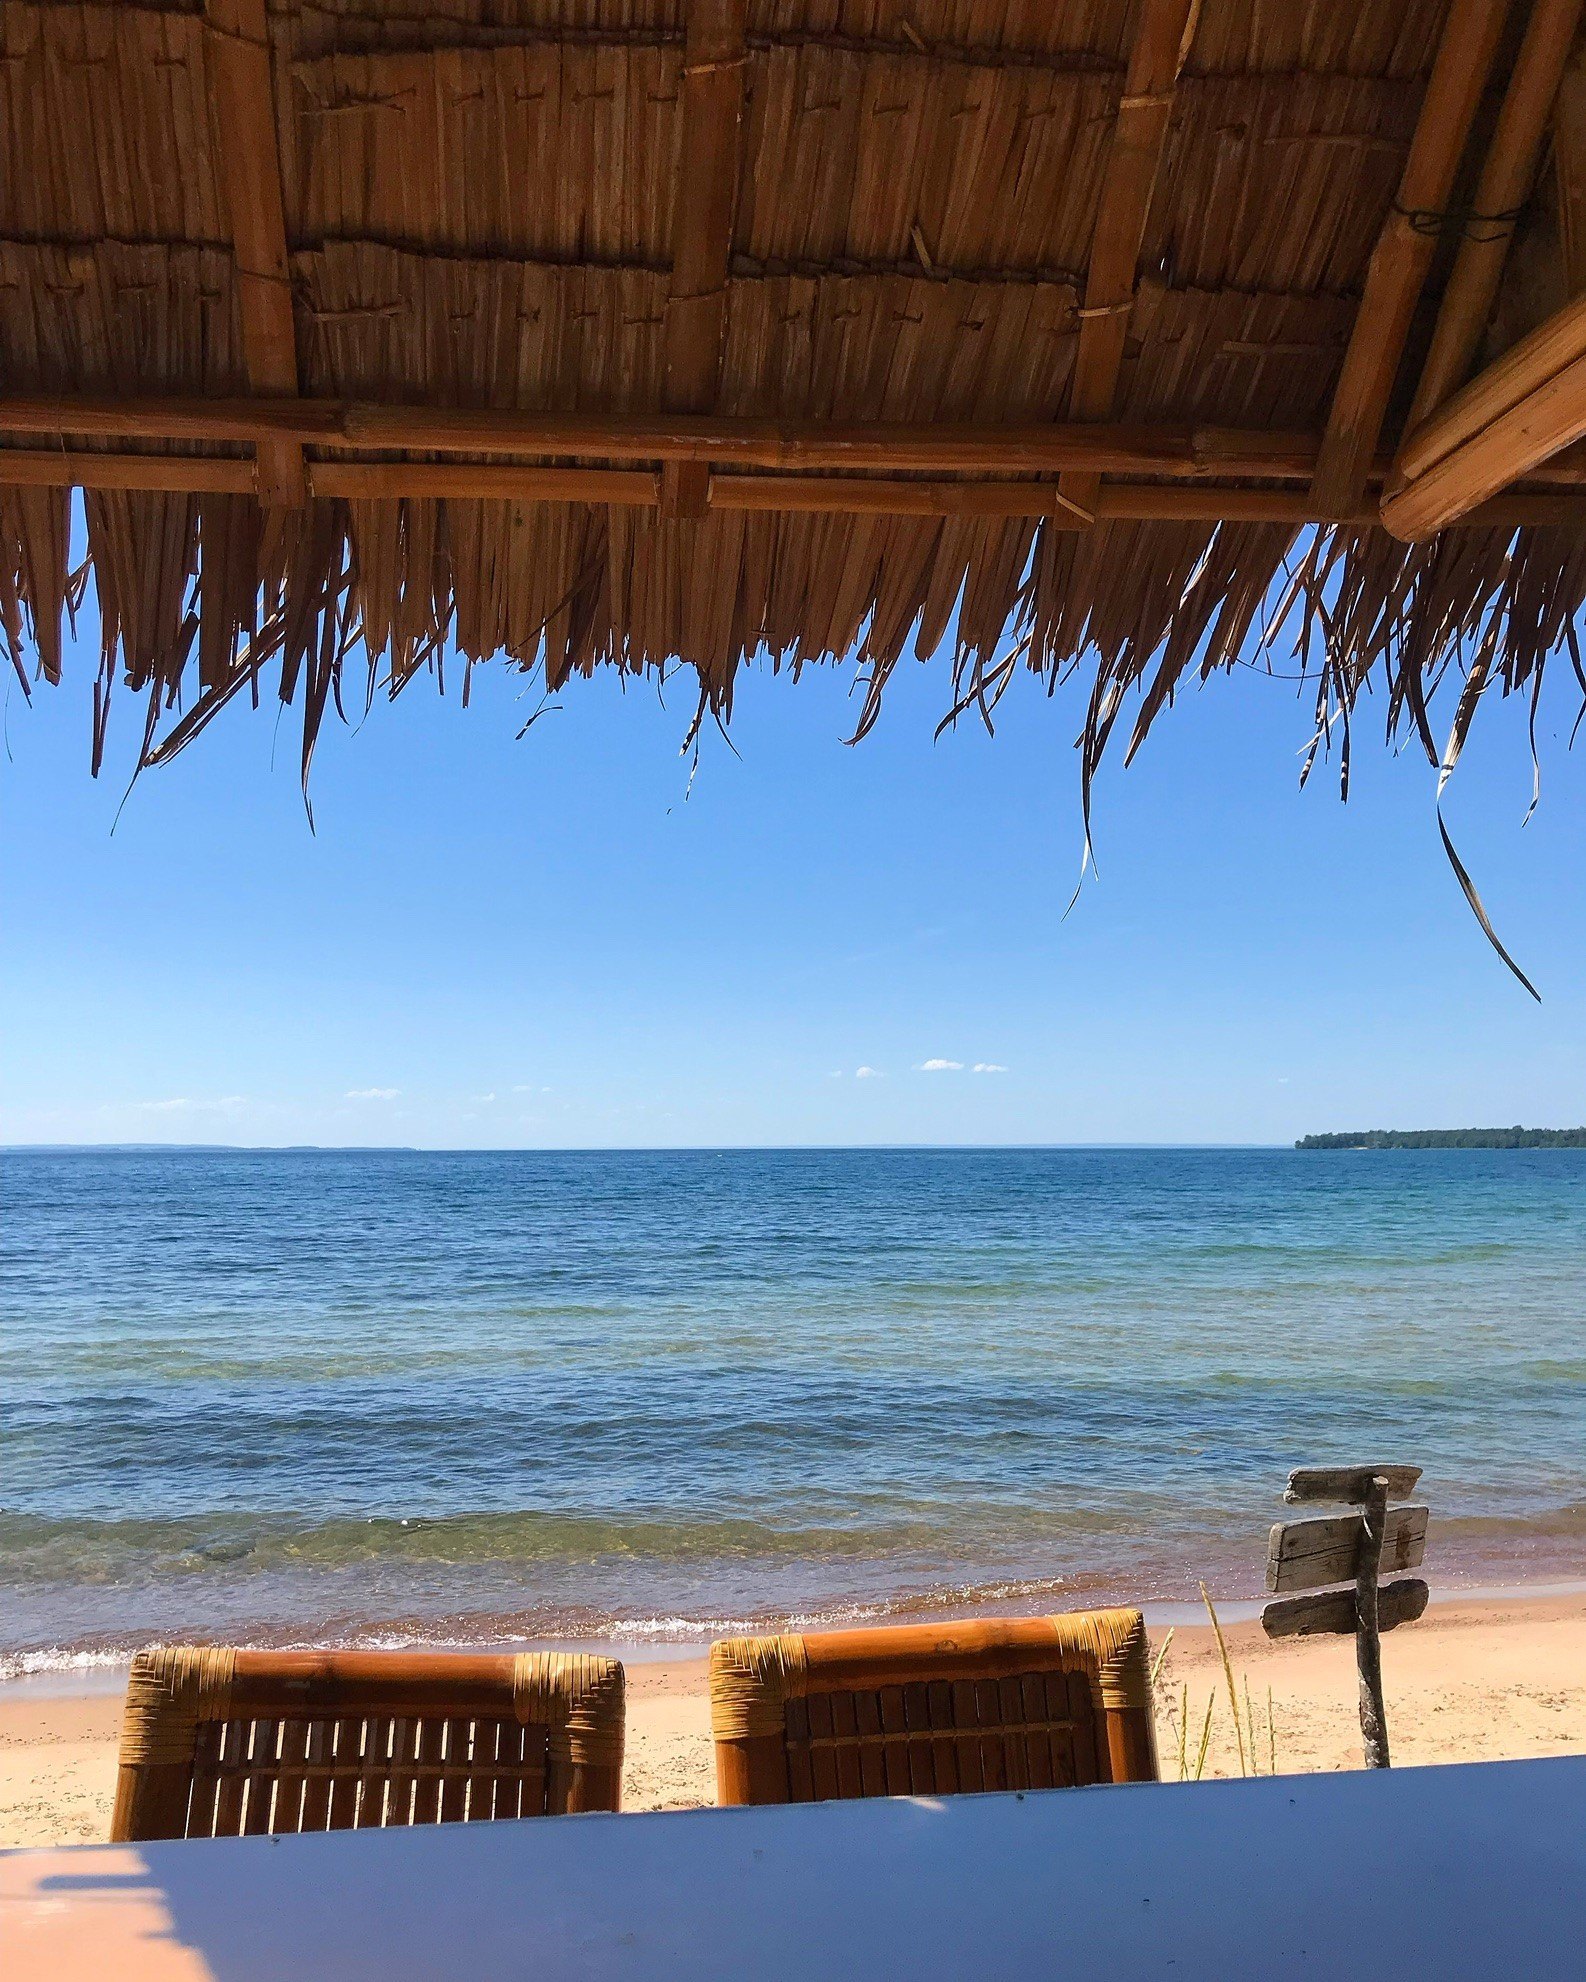 En utsikt över en strand mot blått vatten. I överkant skymtas ett söderhavsinspirerat tak av torkade palmblad.